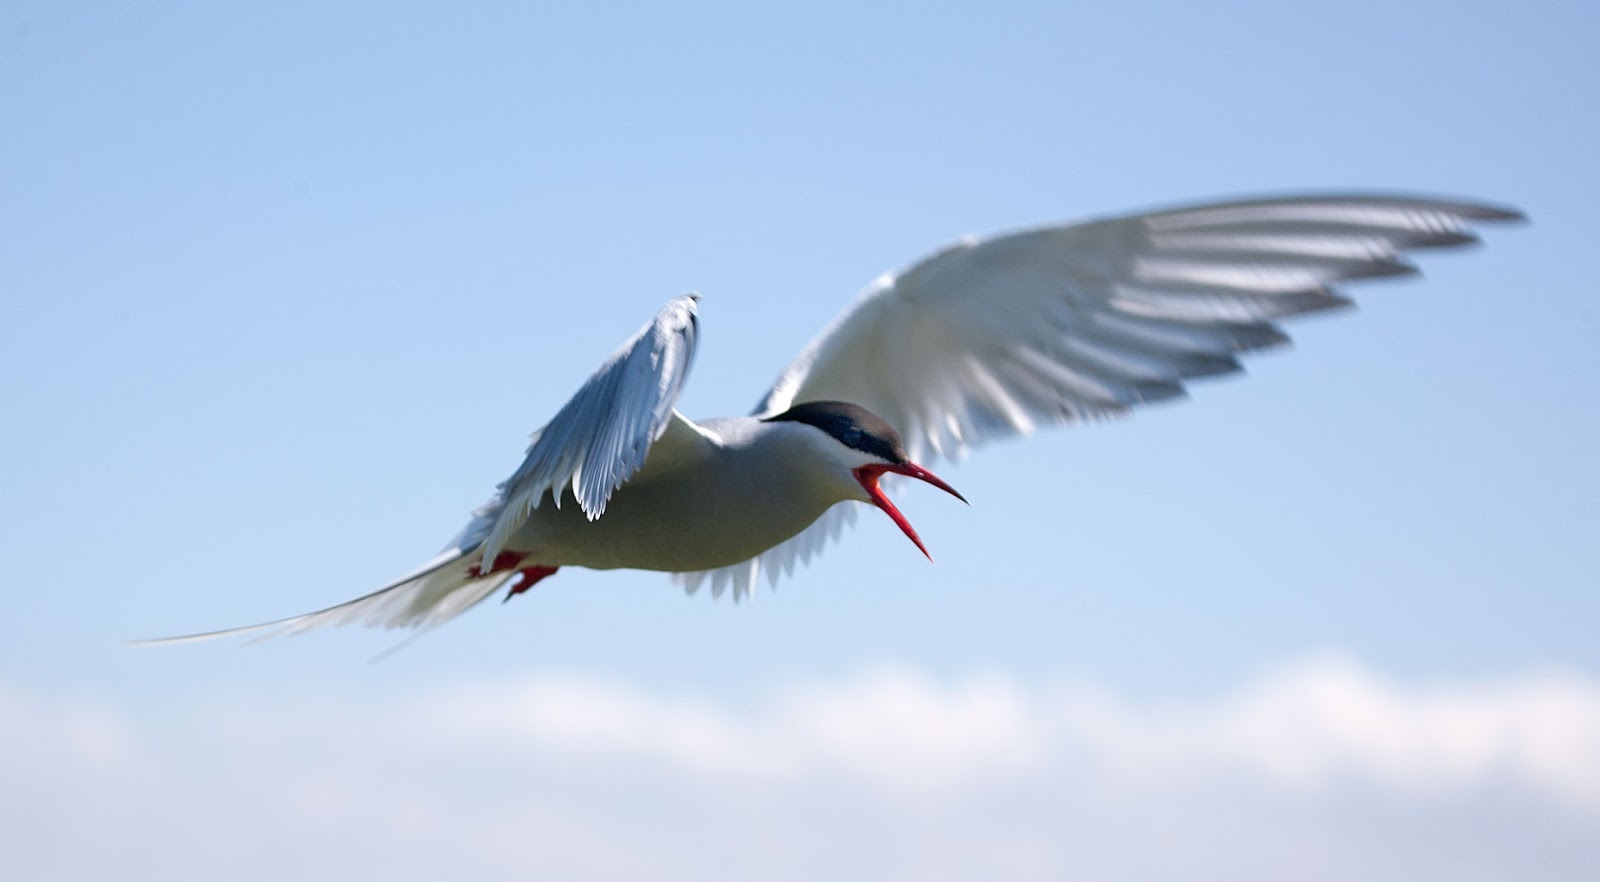 Arktisk tern: ett foto av en fågel i flygning